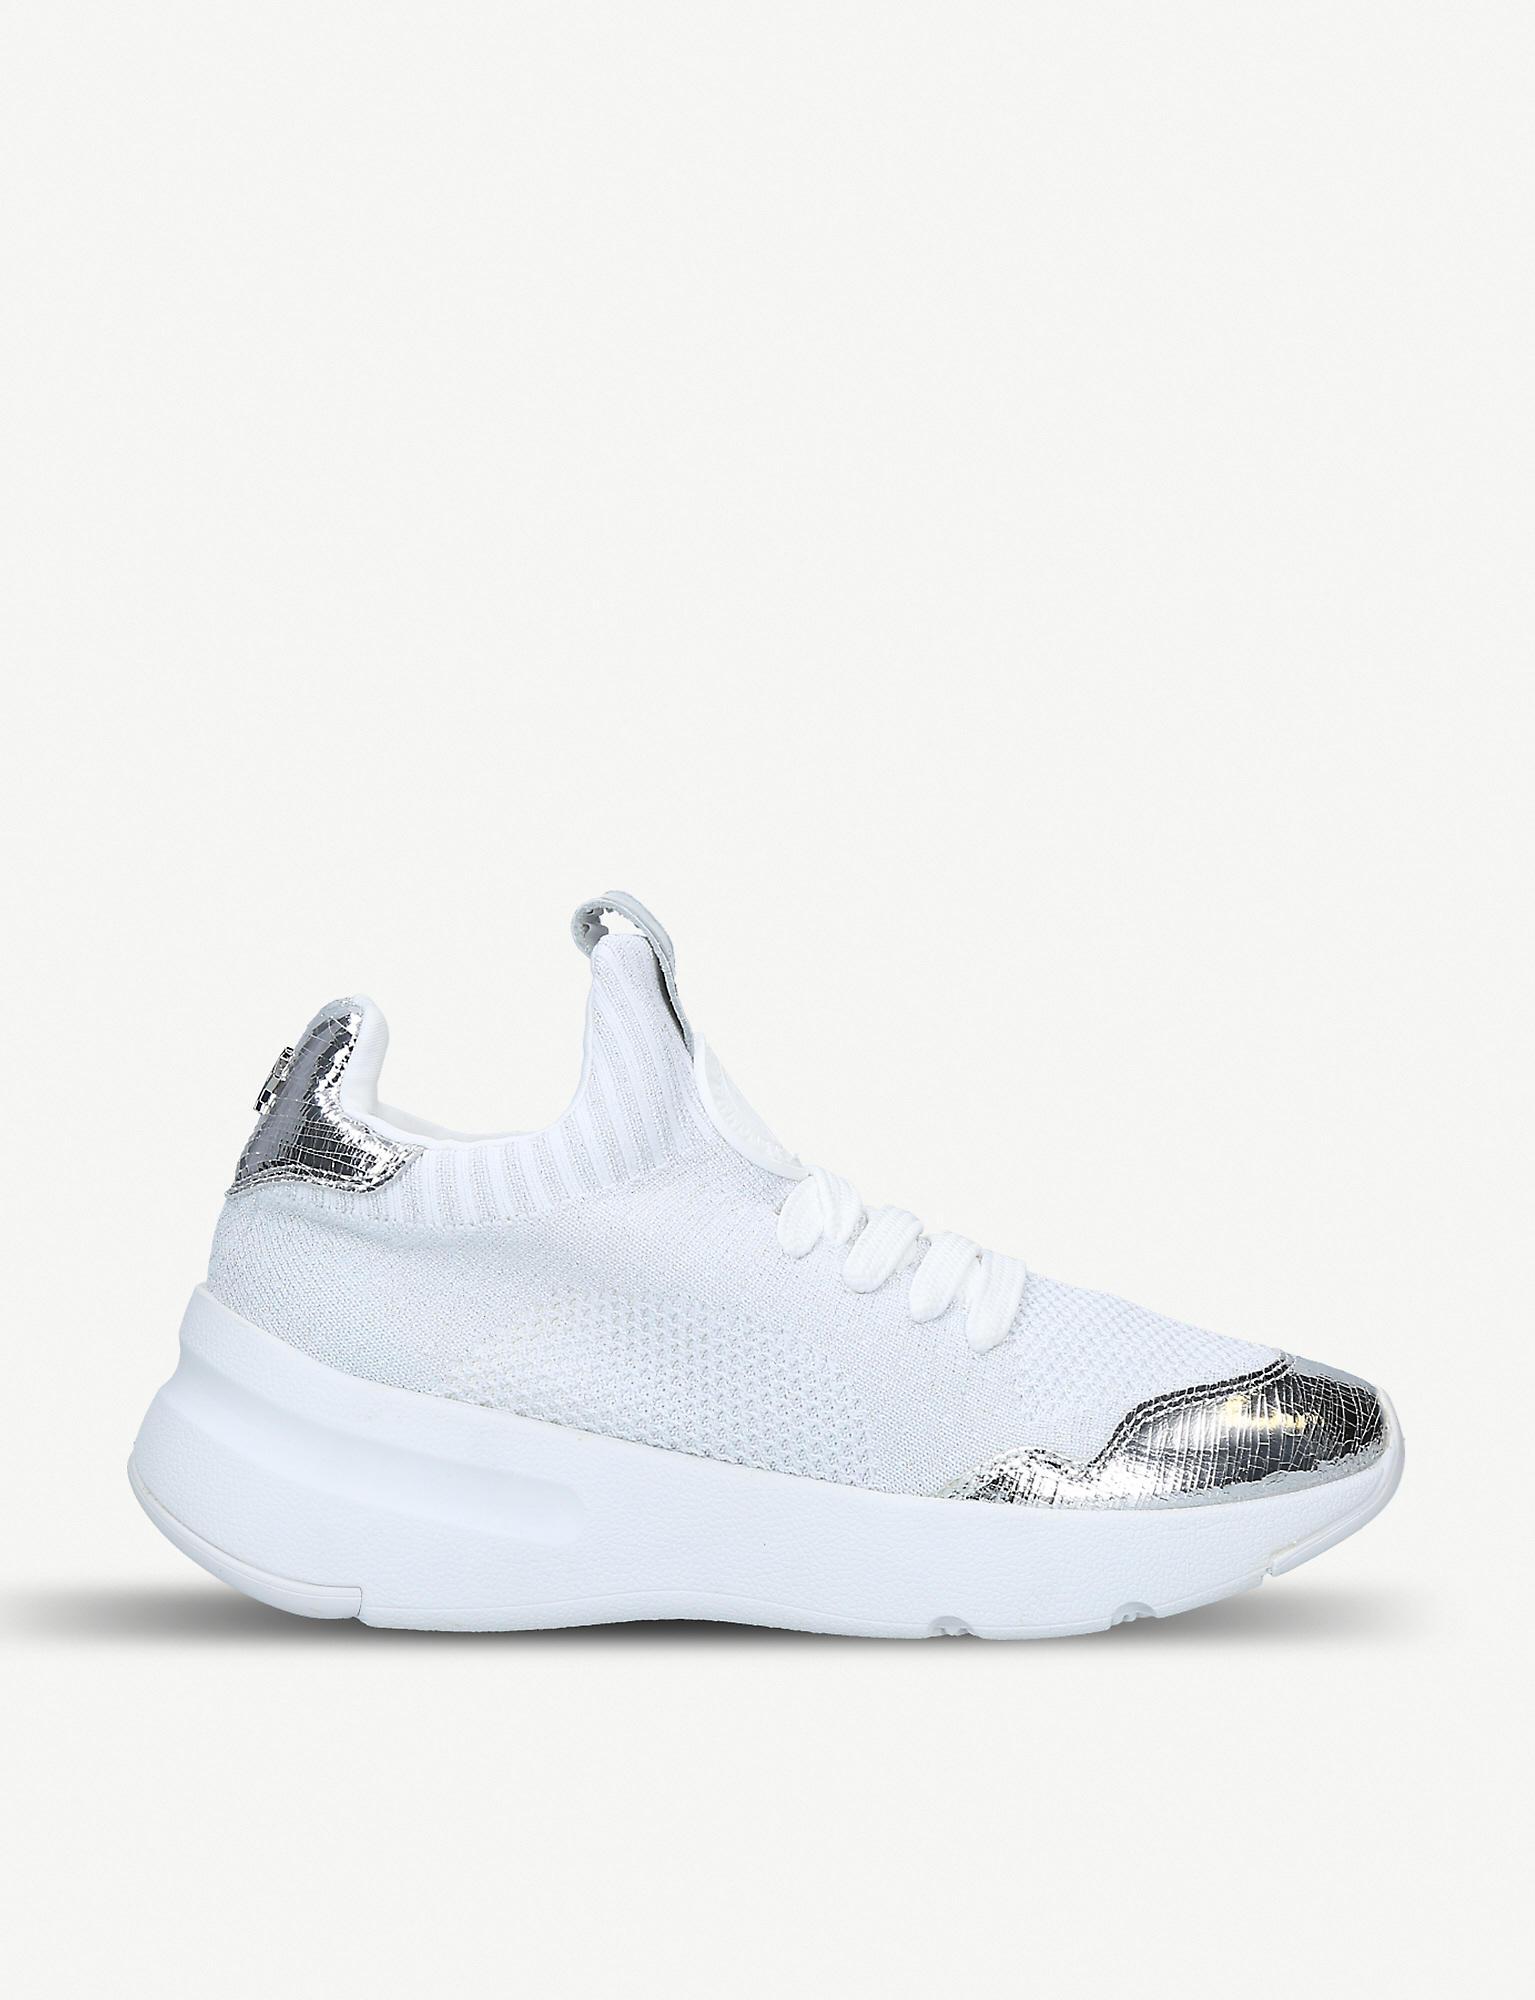 DKNY Rubber Pamela Flat Sneakers White - Lyst